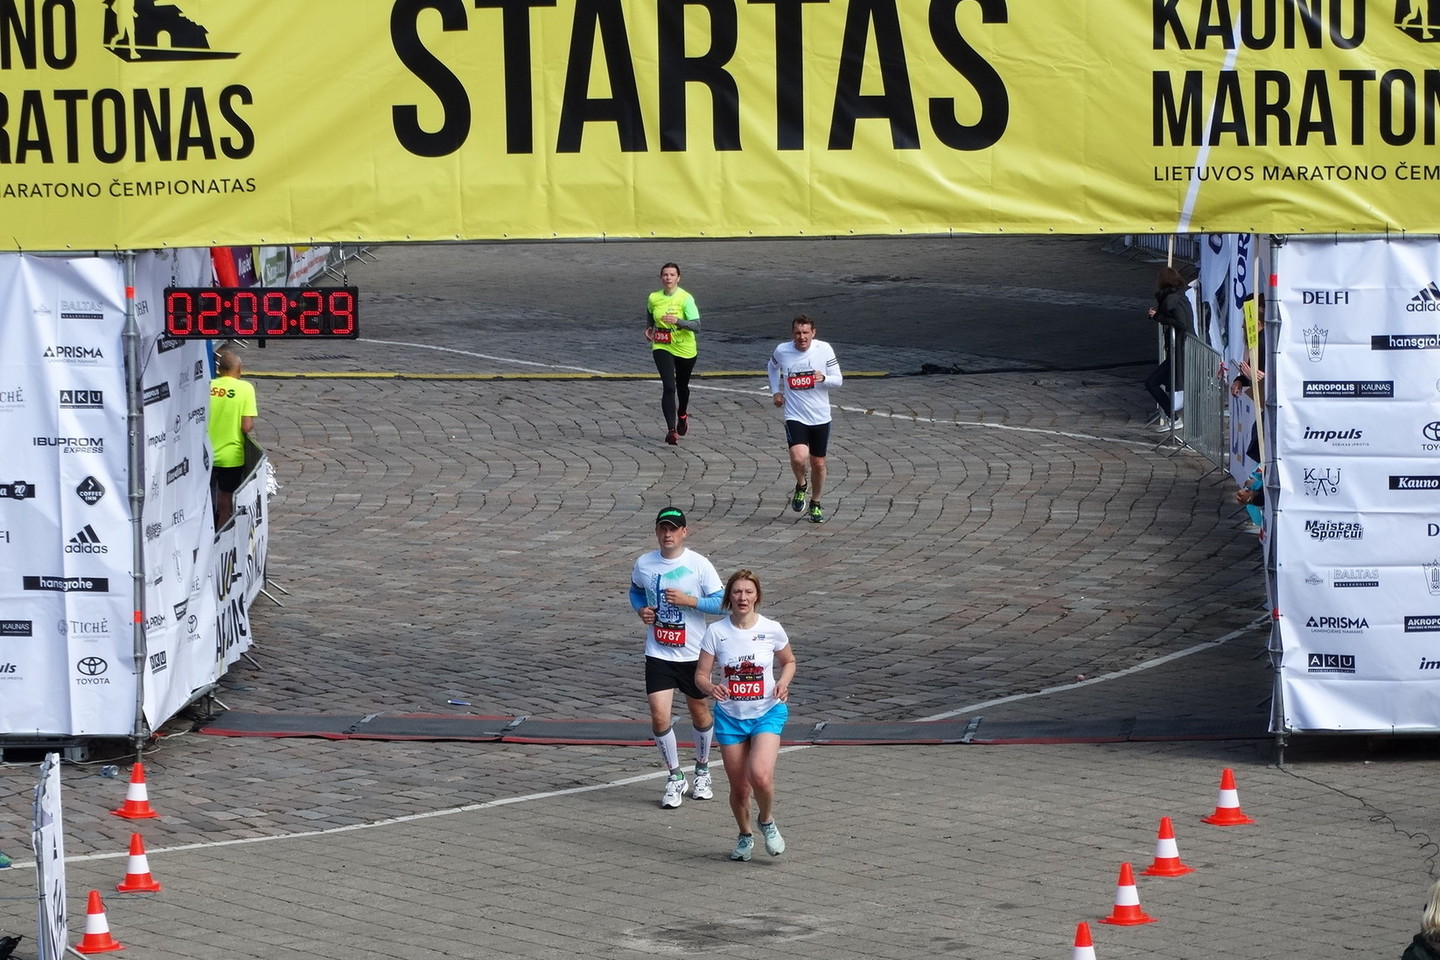 „Kauno maratono“ trasą šįkart išbandė apie 5000 bėgikų.<br>A.Karaliūno nuotr.